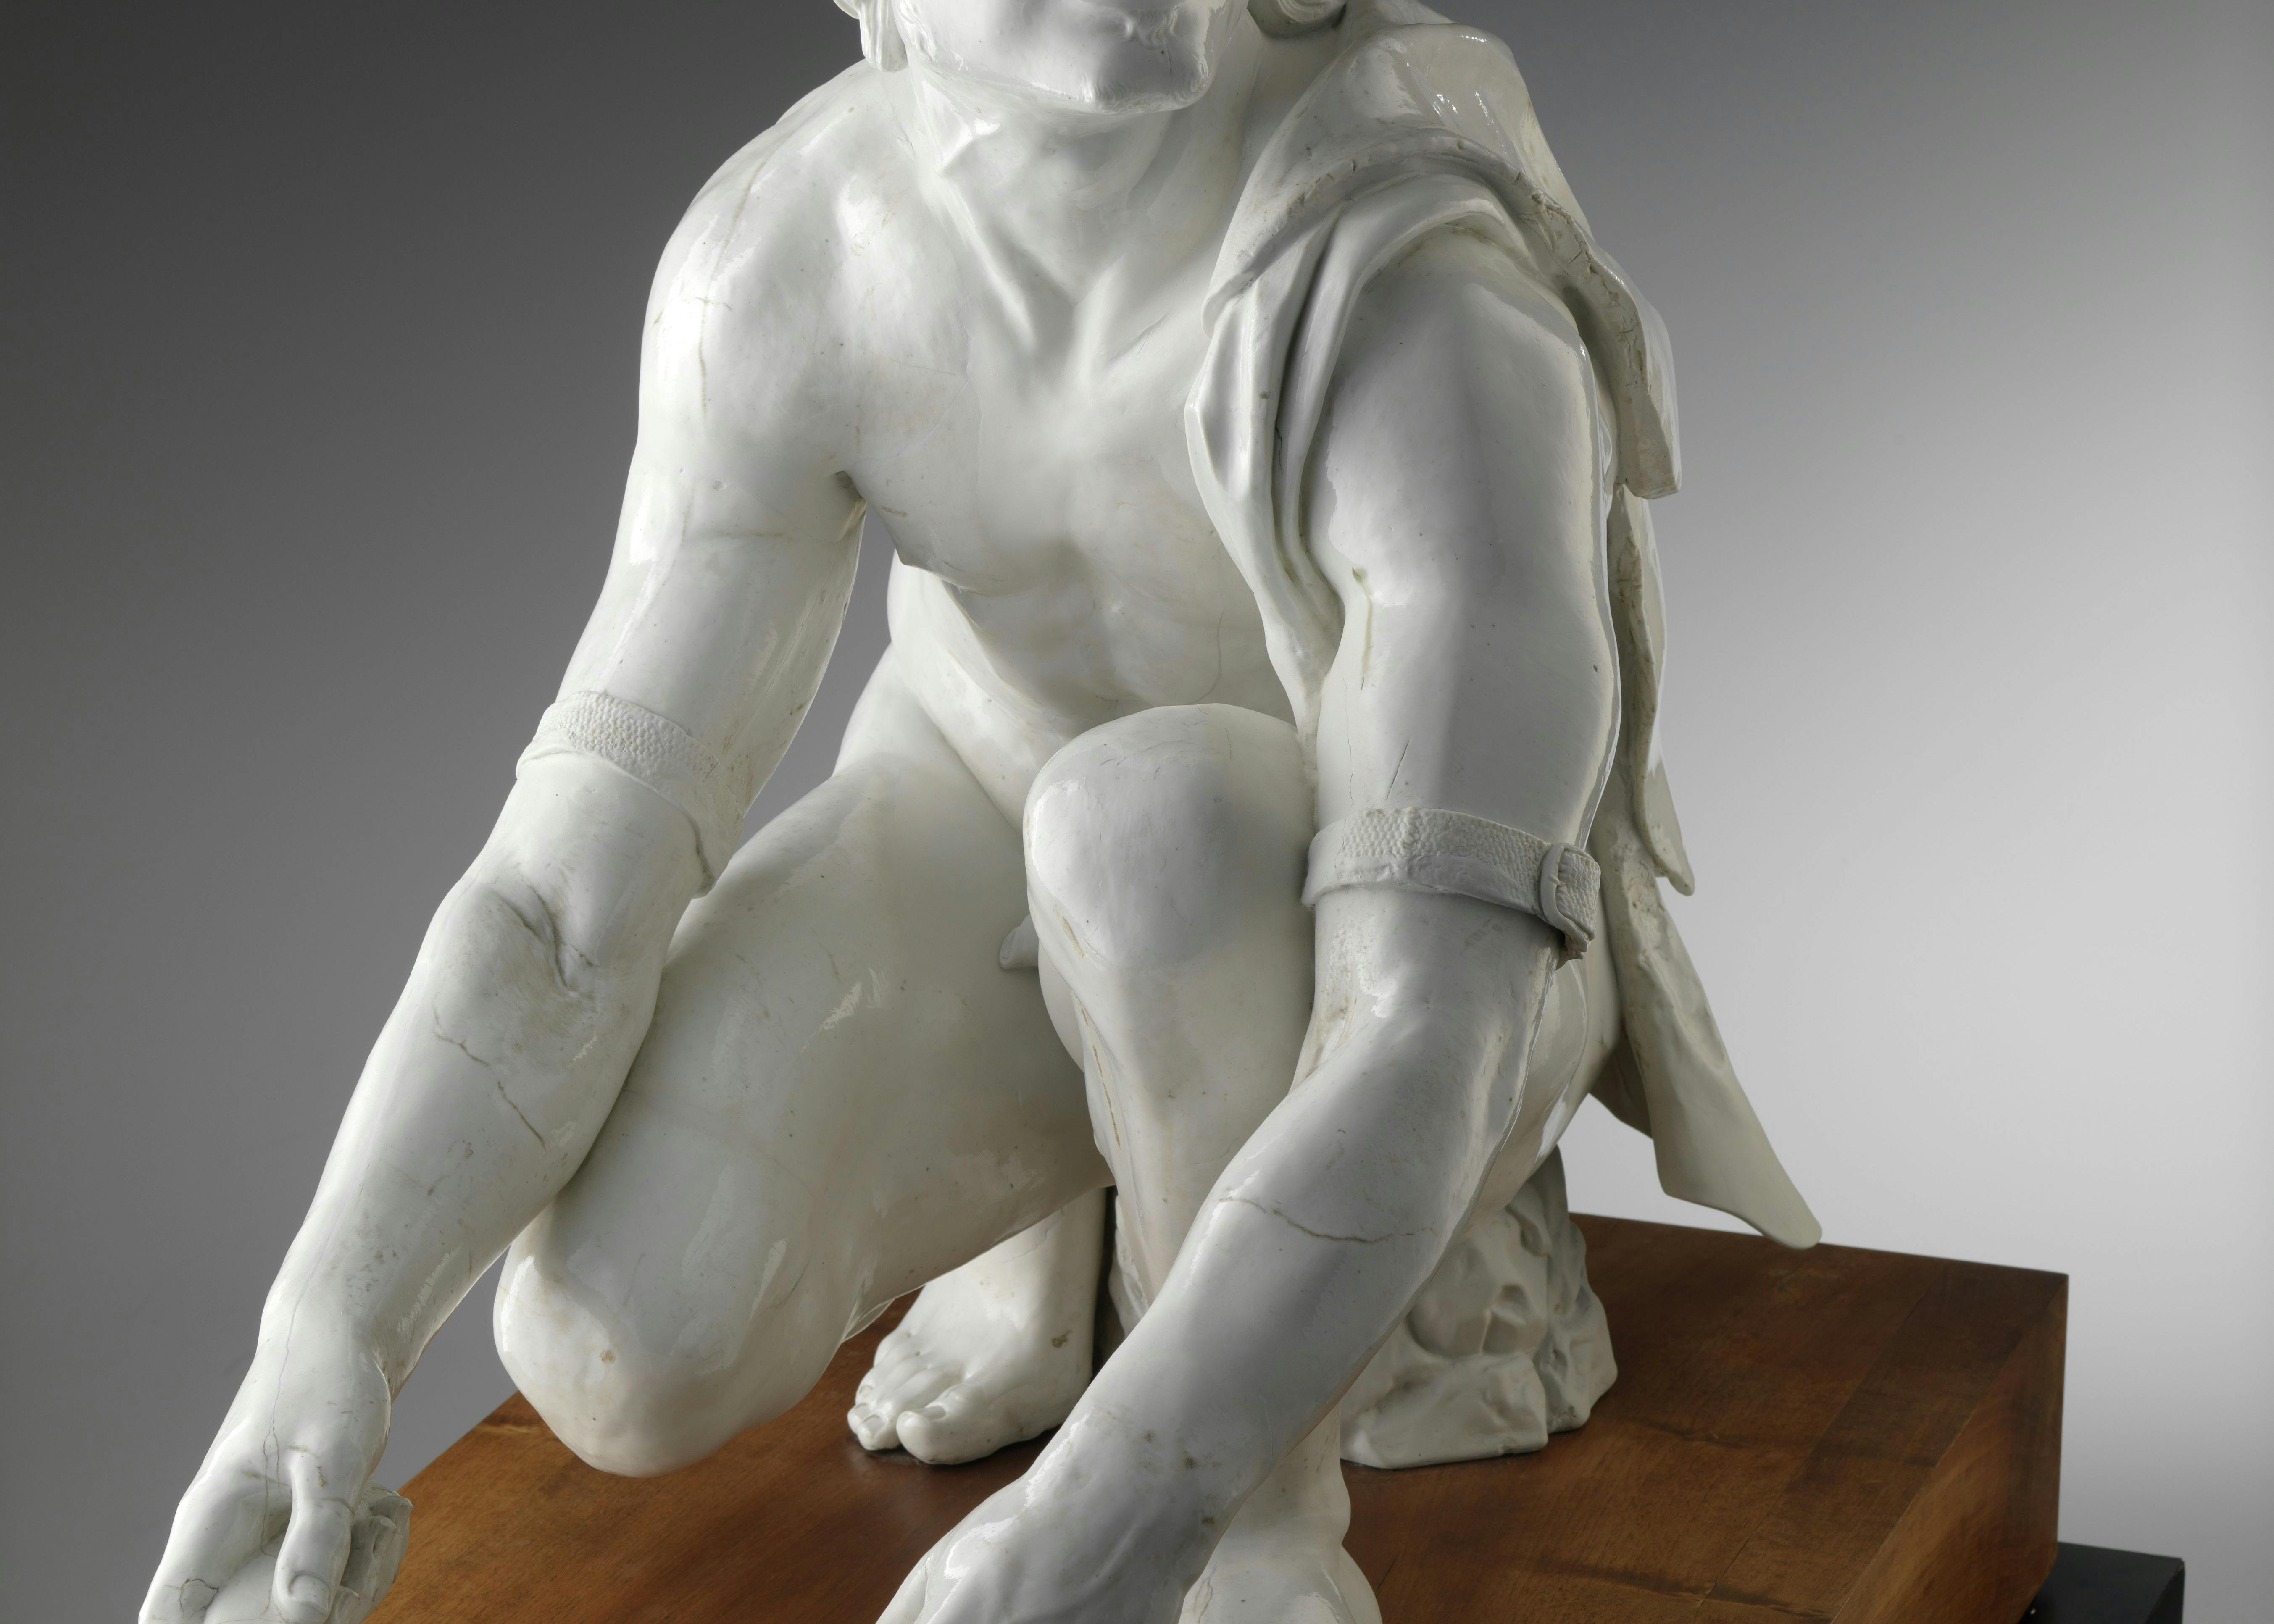 Vista frontale della scultura di porcellana bianca che raffigura un uomo inginocchiato intento a limare un coltello